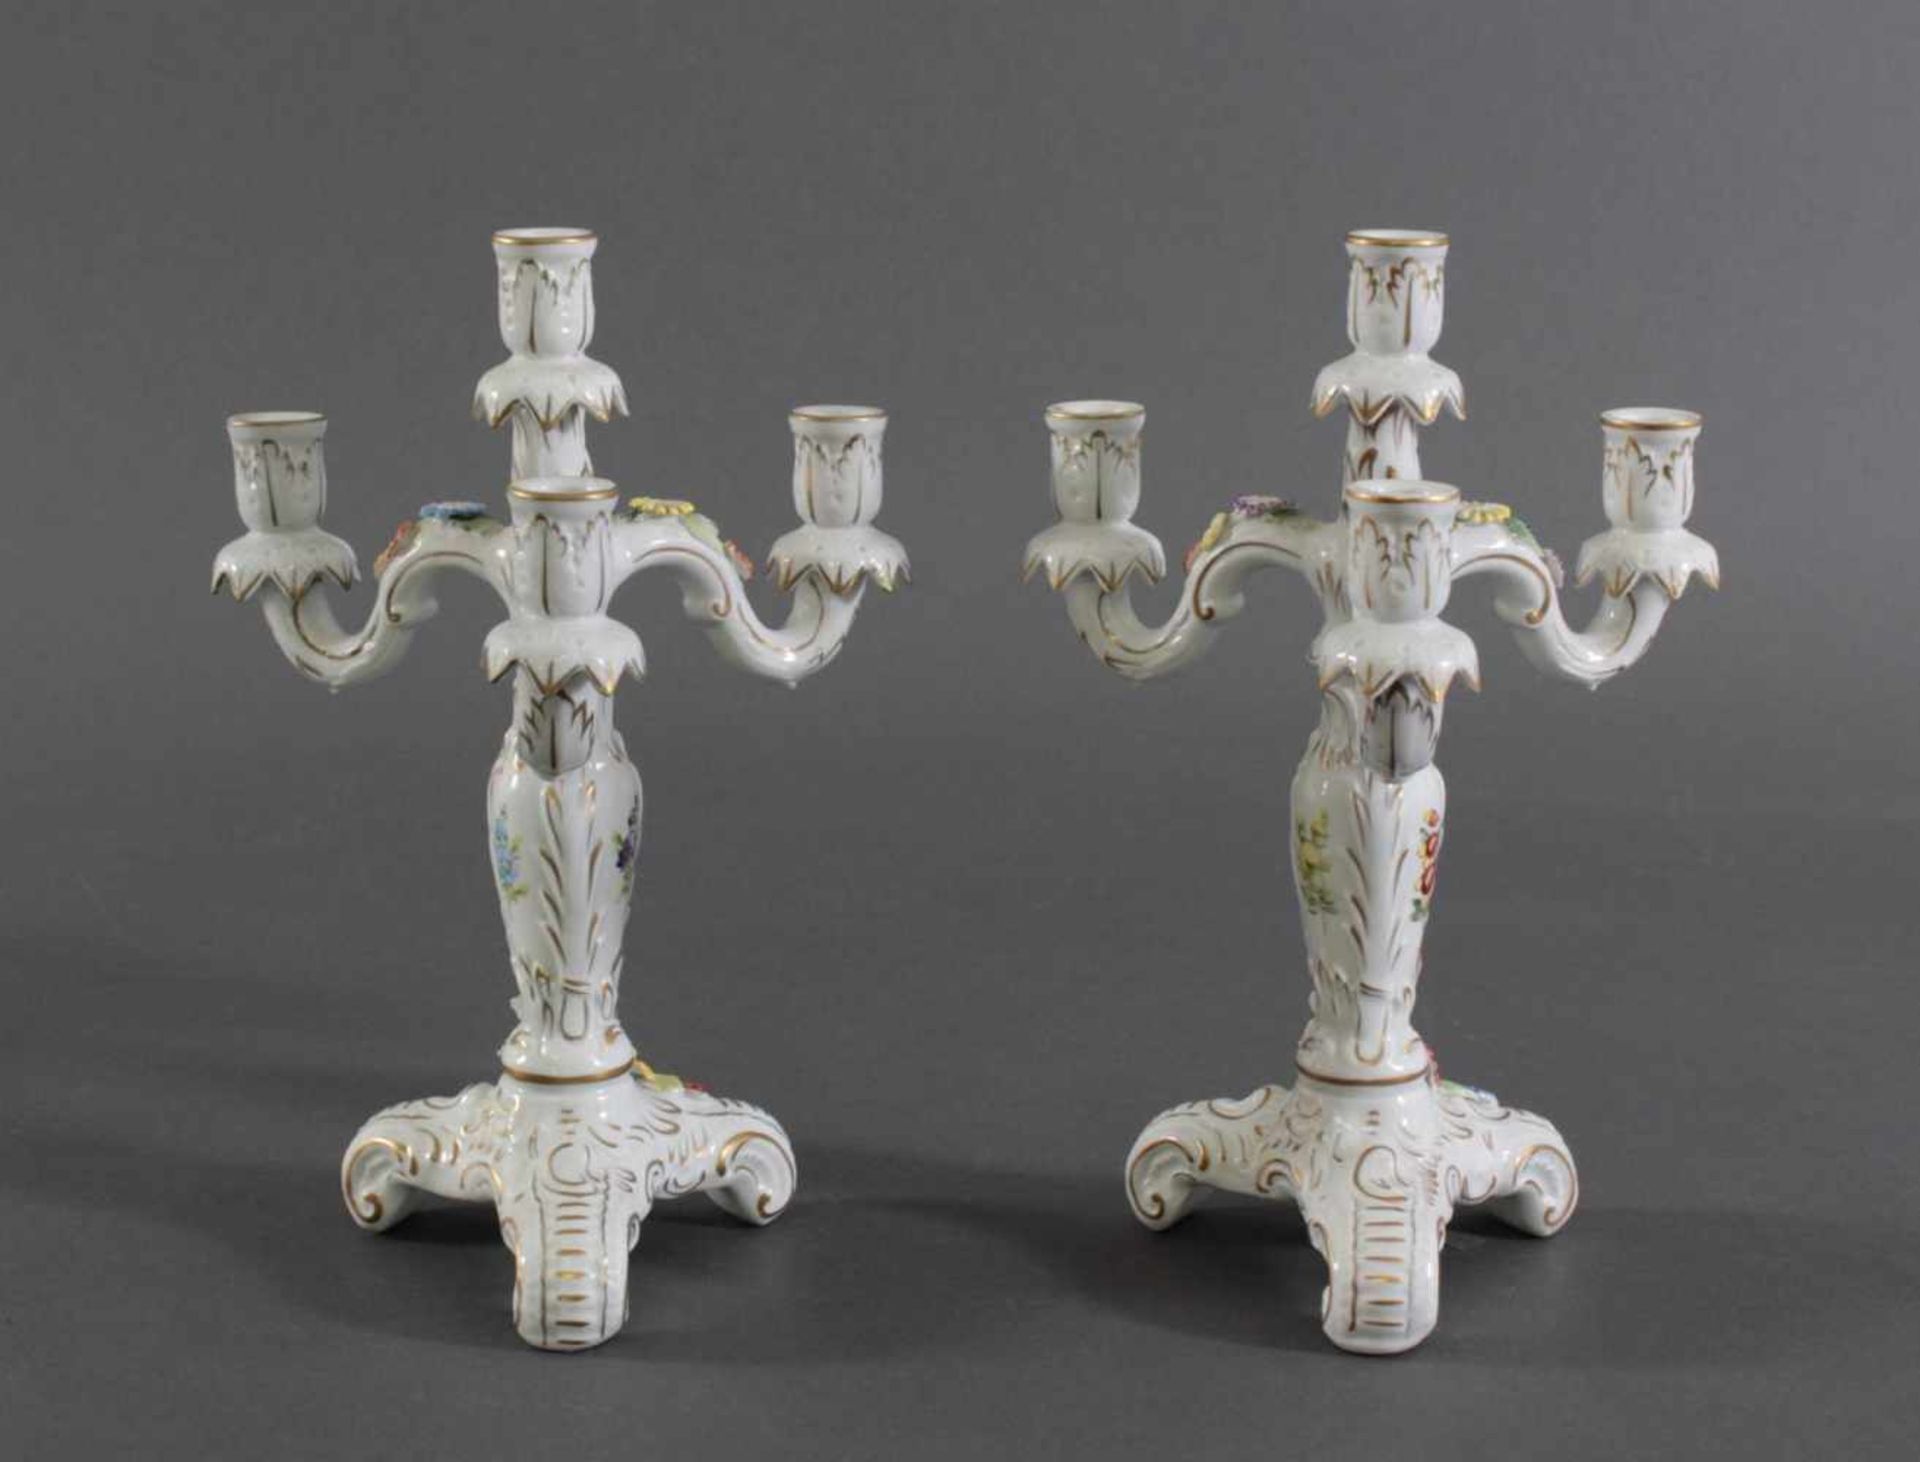 Paar Kerzenleuchter, Porzellanmanufaktur/PlauePorzellan, 3-flammiger Leuchter auf dreibeinigem - Image 2 of 5